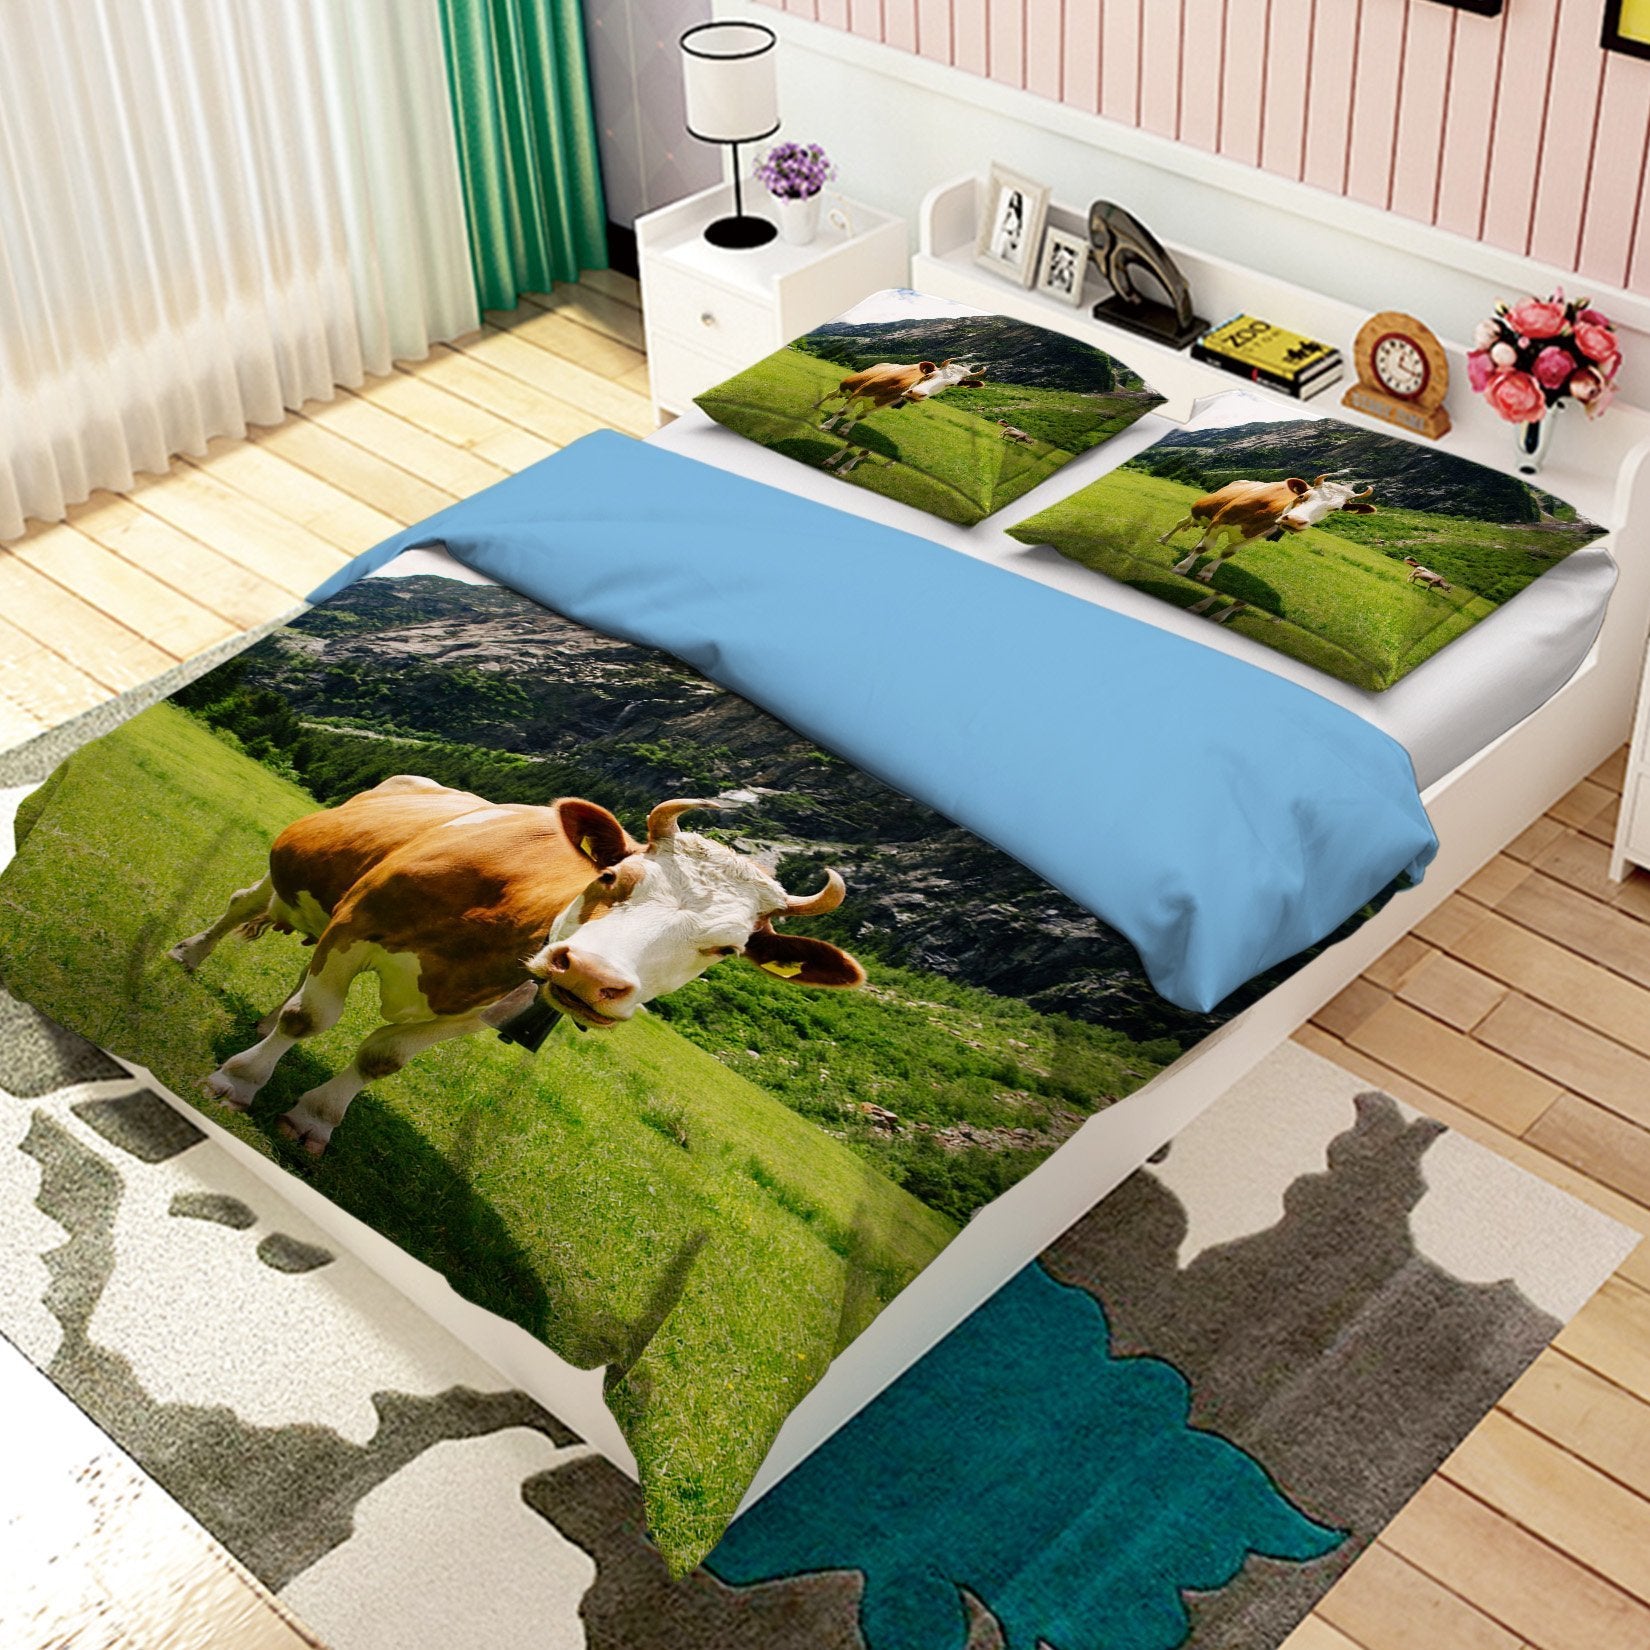 3D Prairie Cow 1904 Bed Pillowcases Quilt Quiet Covers AJ Creativity Home 